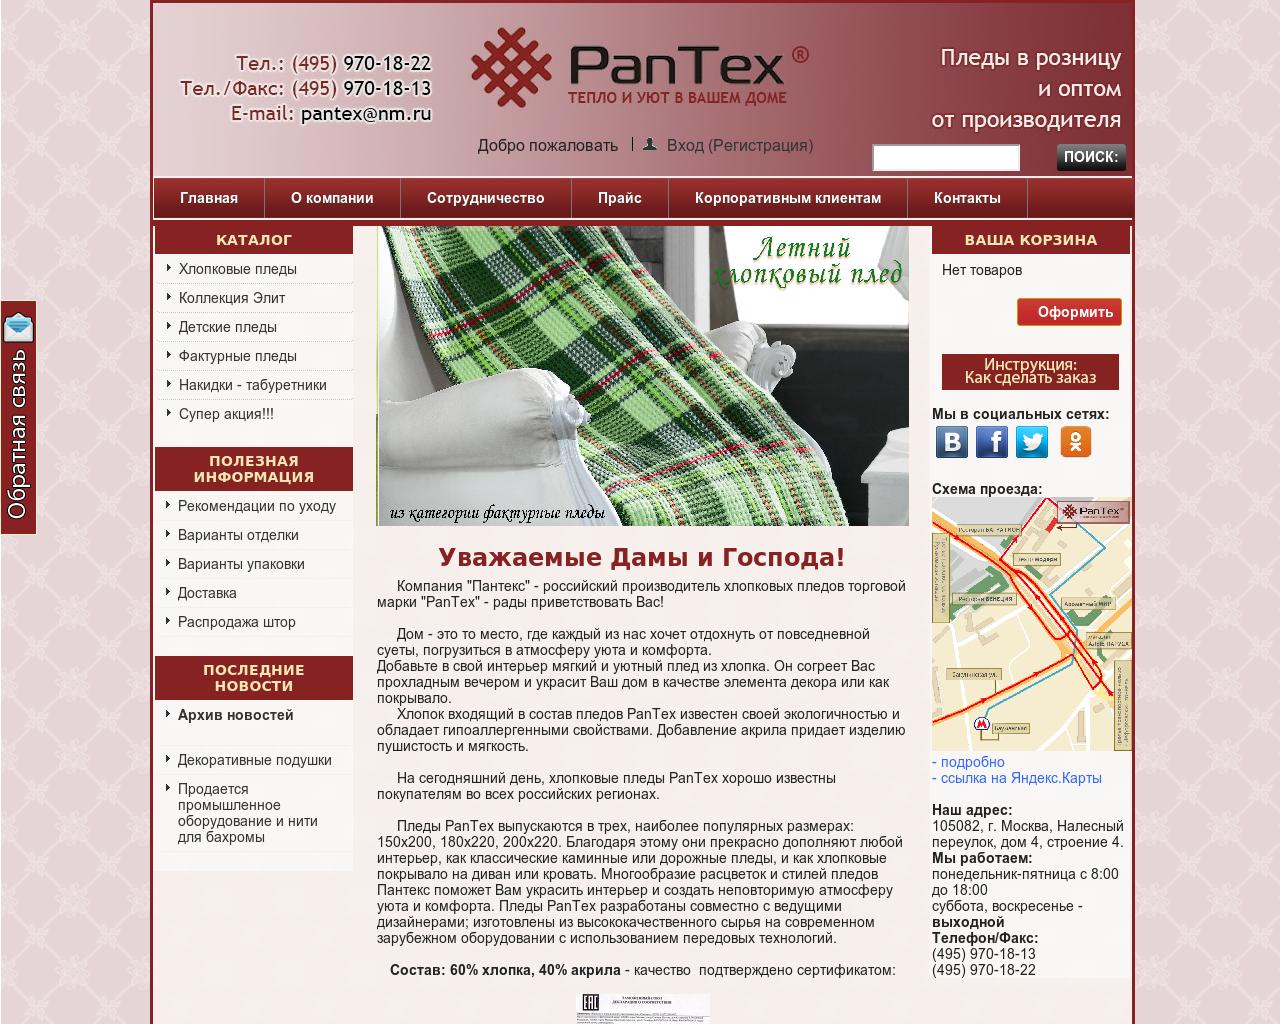 Изображение сайта pantex.ru в разрешении 1280x1024